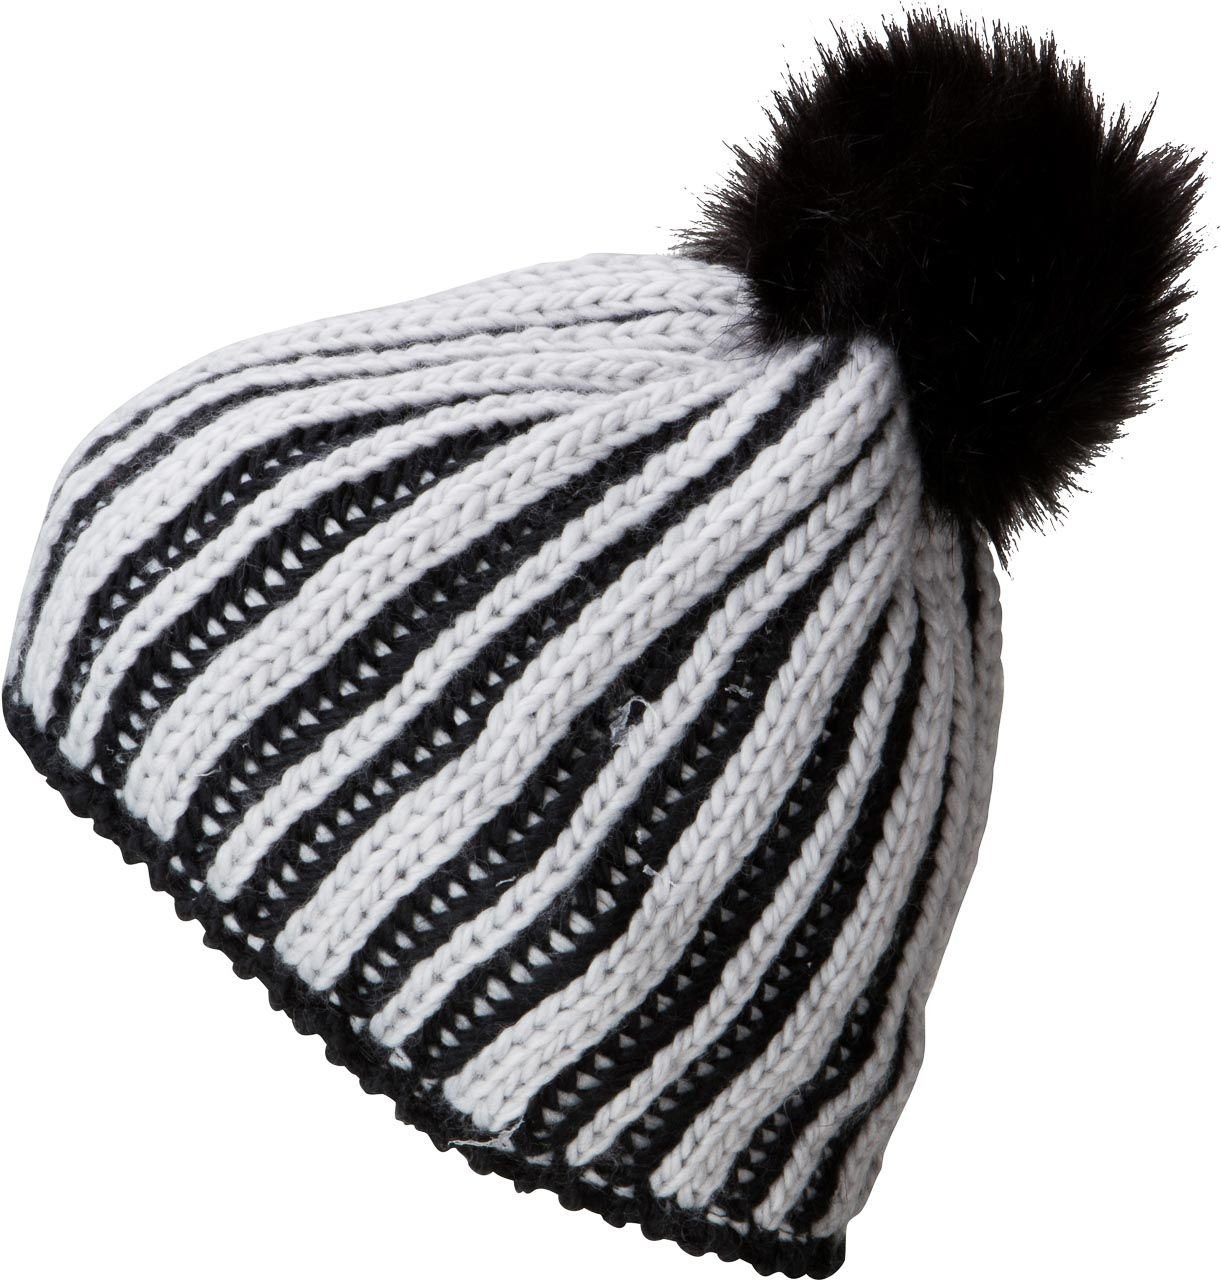 Myrtle Beach Strickmütze Damen Wintermütze für die kalte Jahreszeit MB7107 Innenseite mit Fleeceband silver/black | Strickmützen